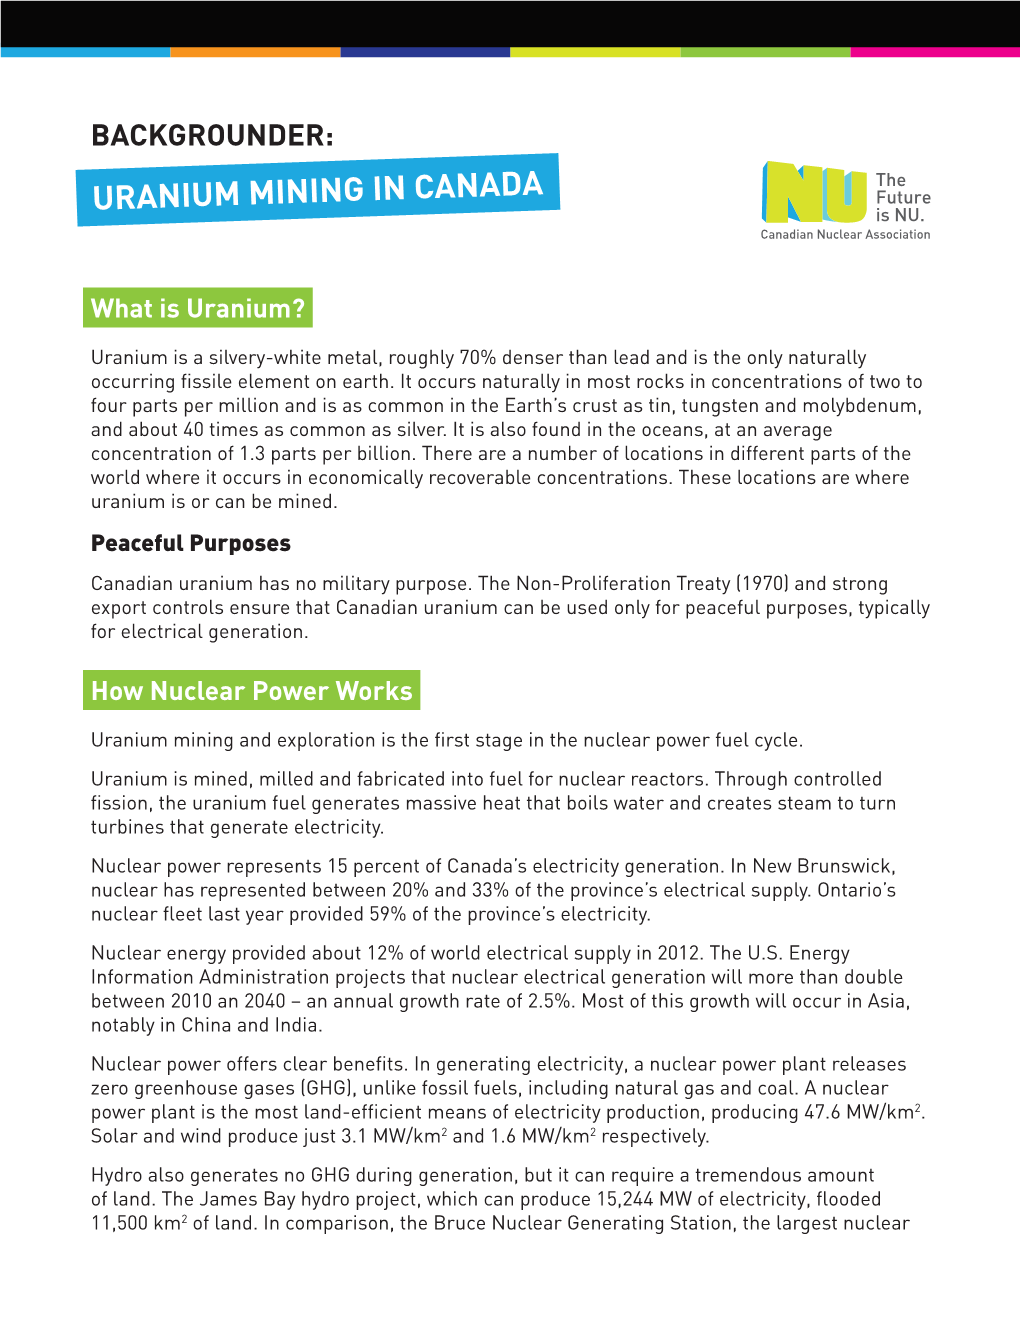 Backgrounder: Uranium Mining in Canada